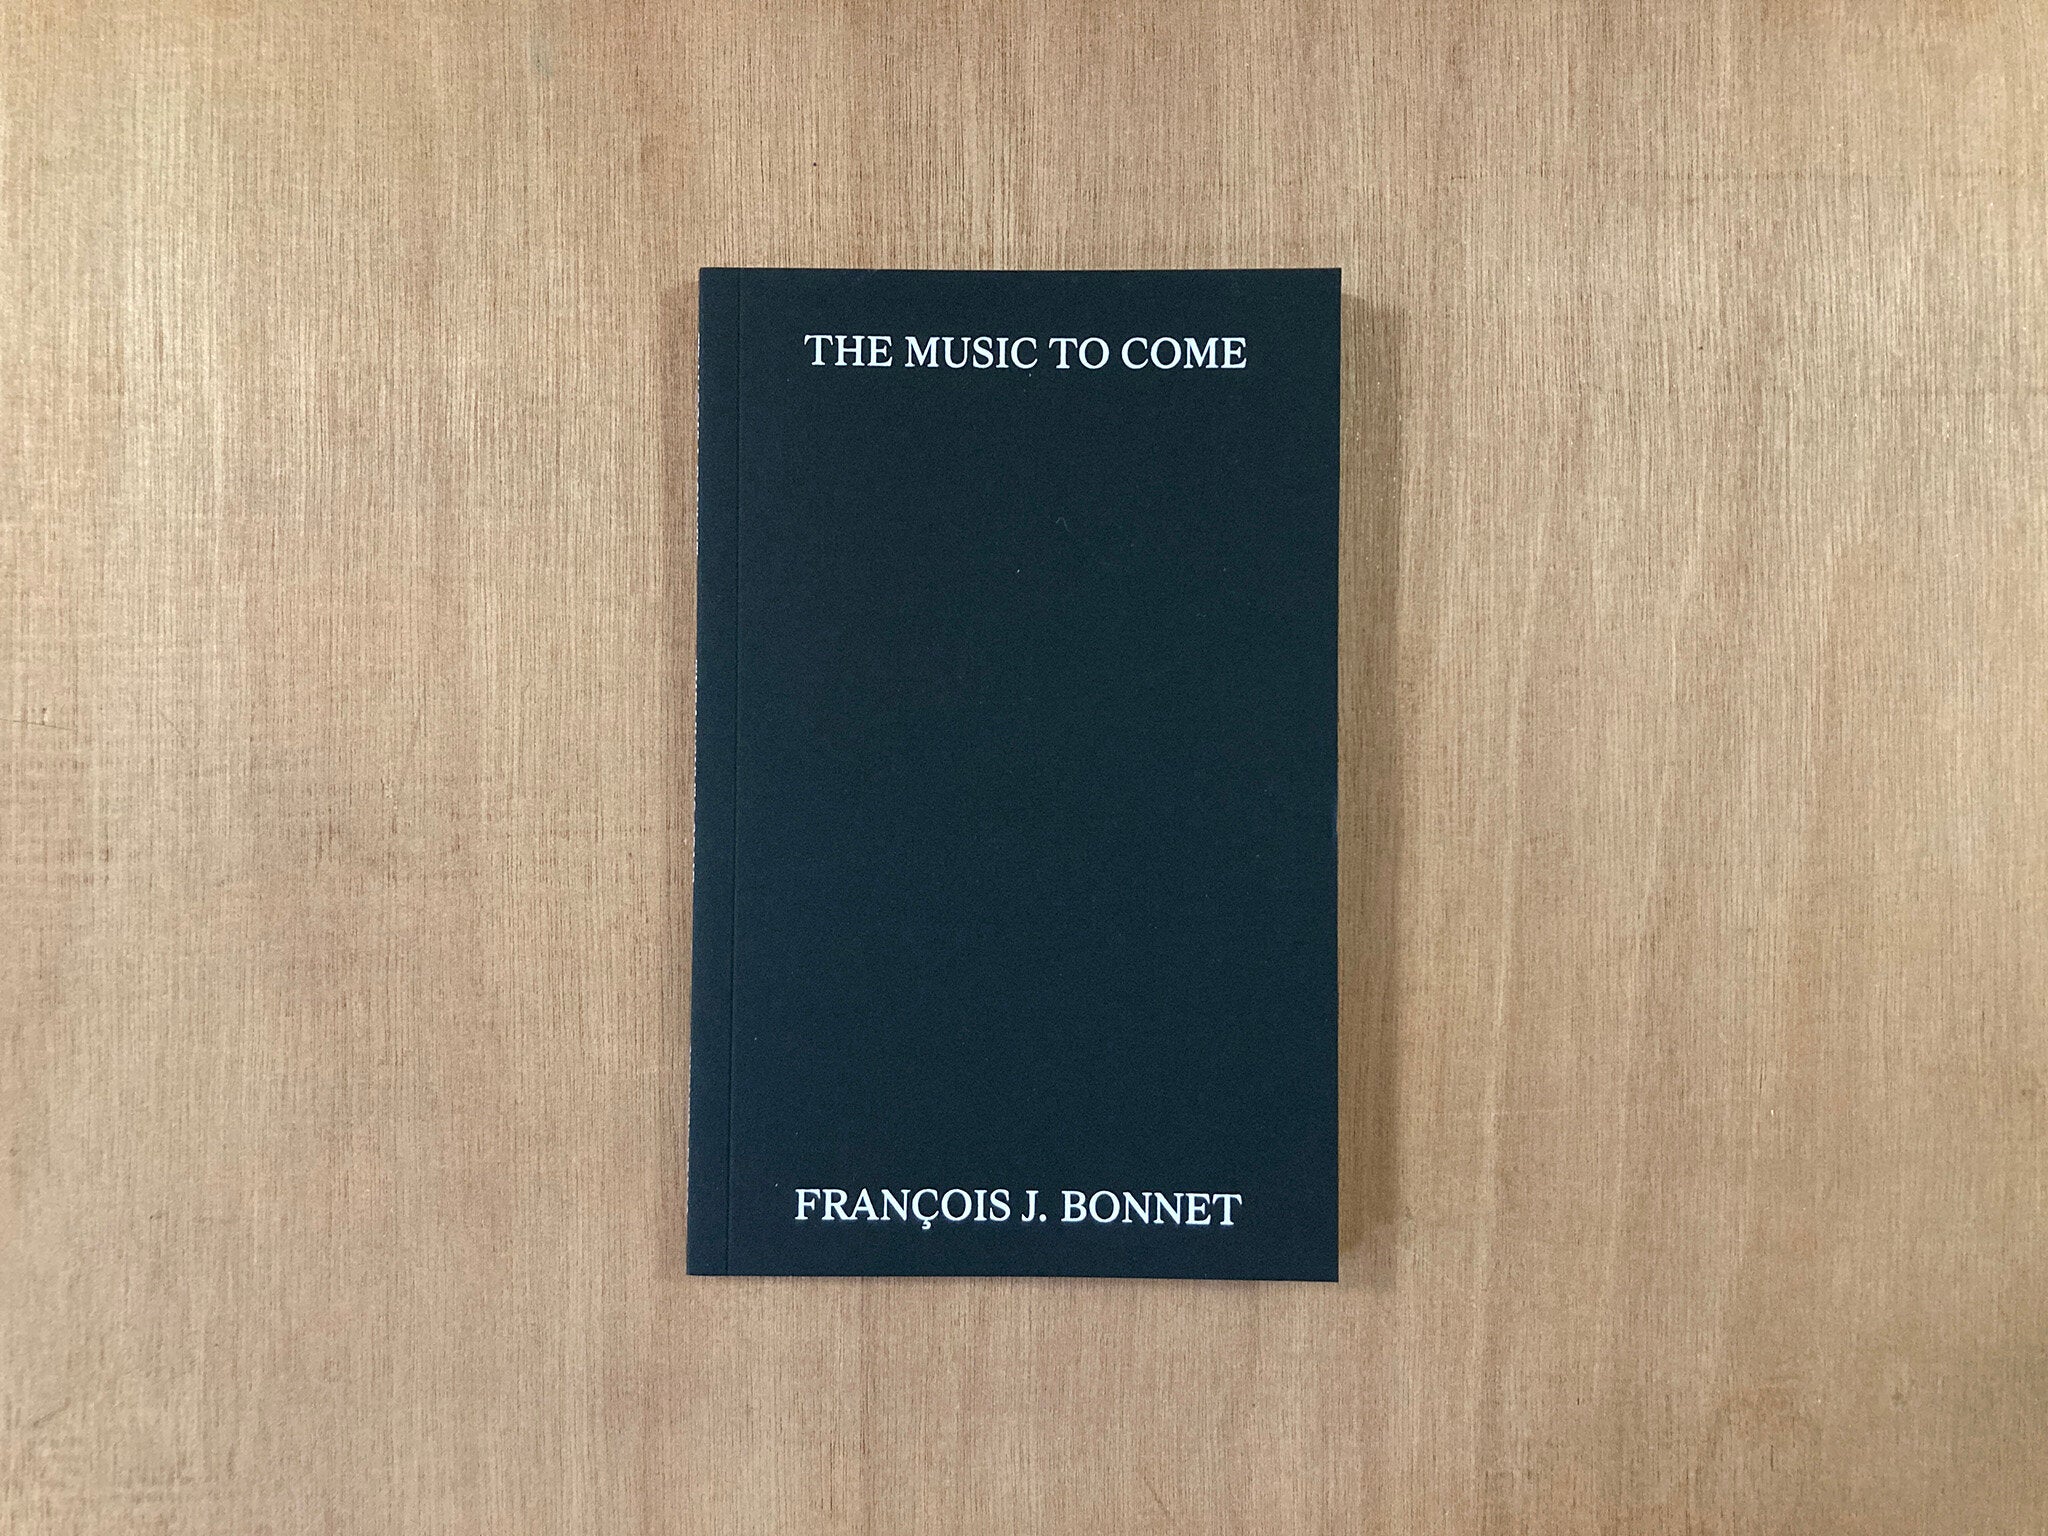 THE MUSIC TO COME by François J. Bonnet